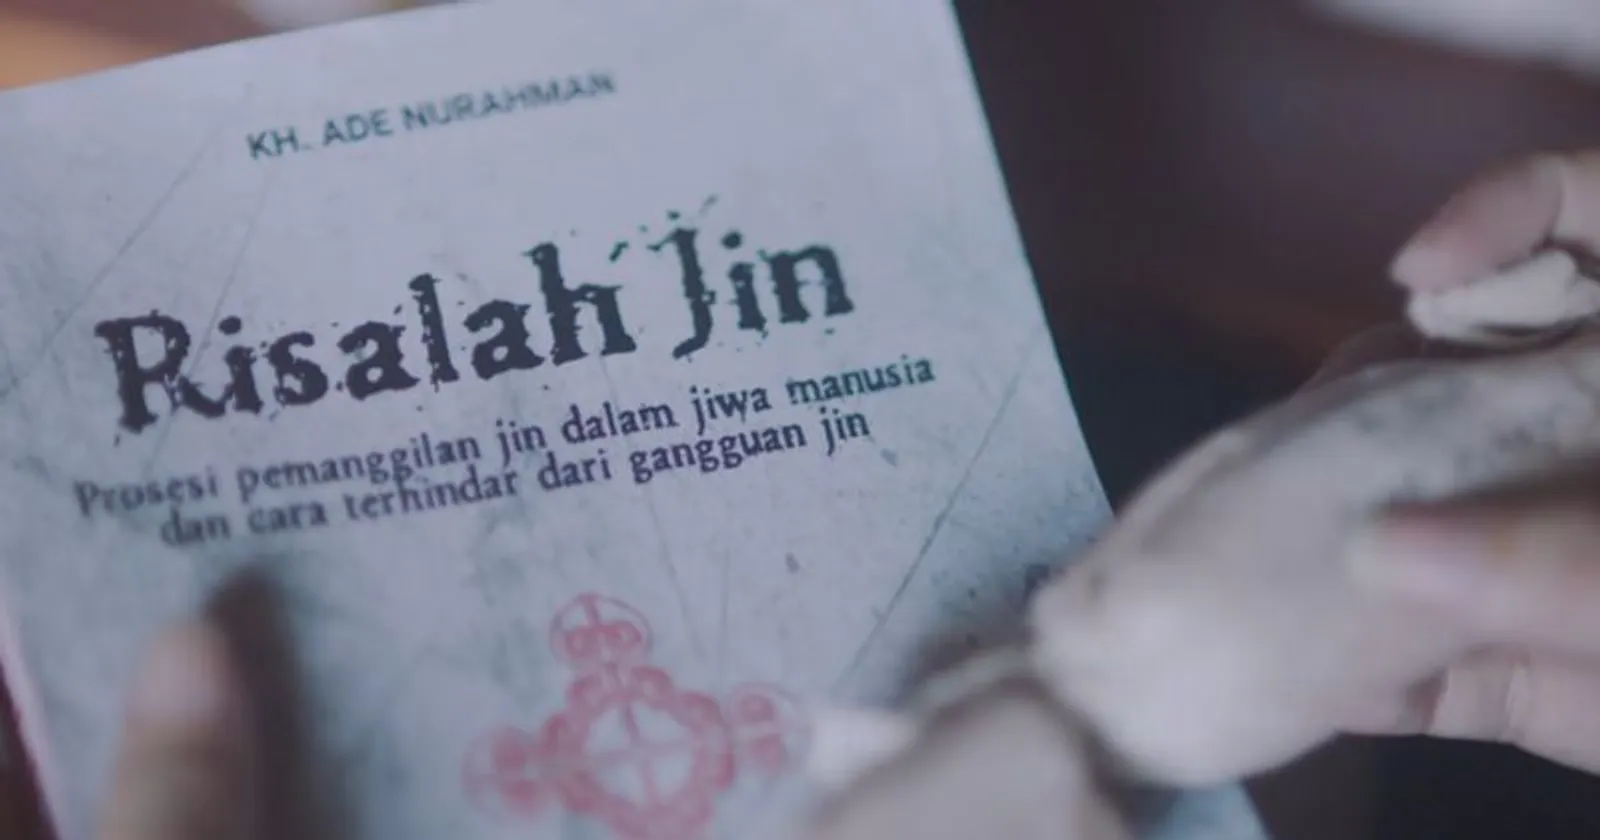 Trailer Film "Qorin" Rilis; Film Horor Terbaru IDN Pictures